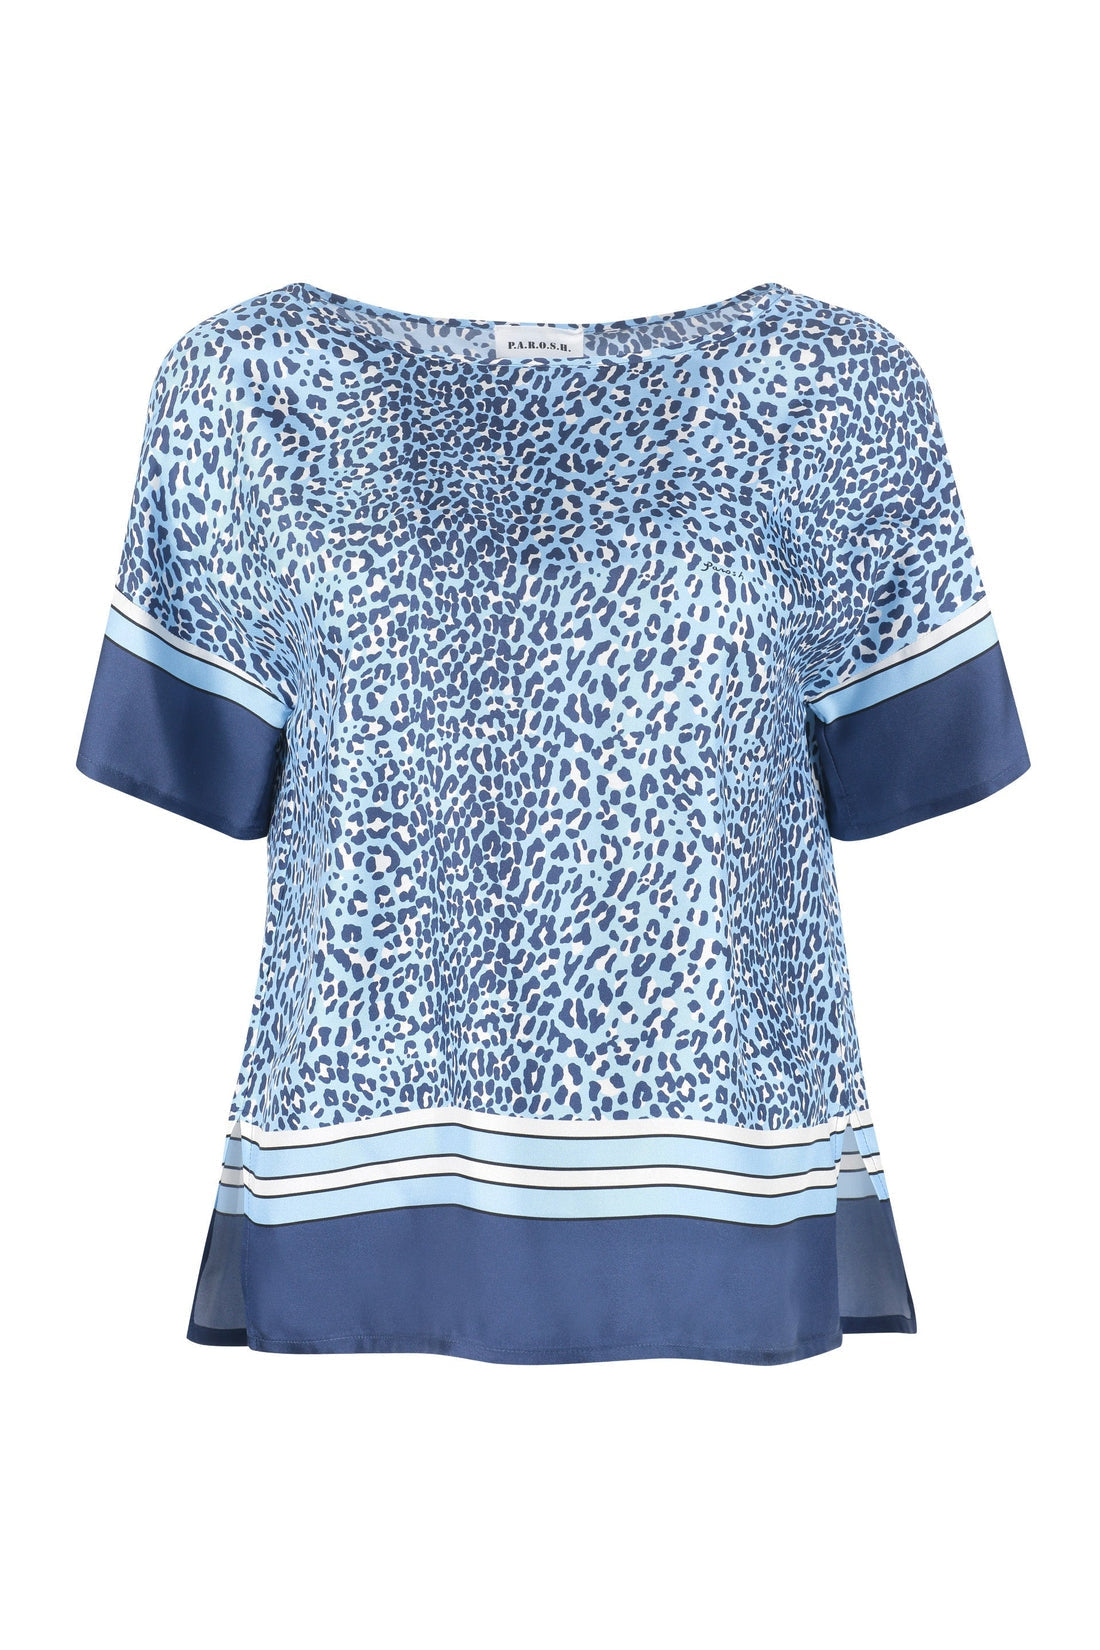 Parosh-OUTLET-SALE-Printed silk blouse-ARCHIVIST